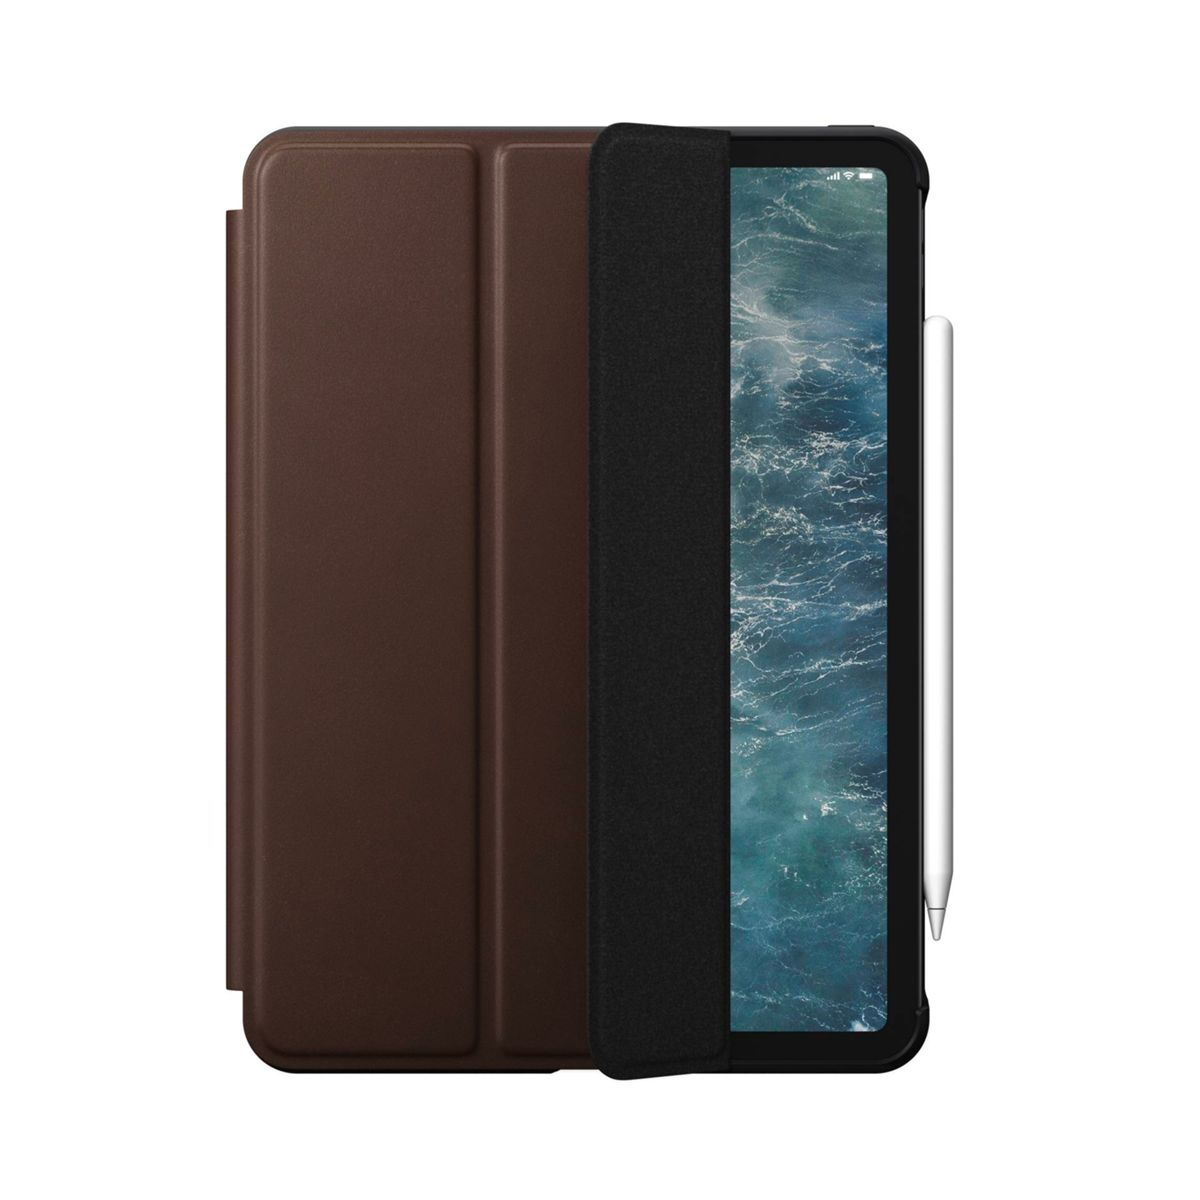 NOMAD Modern Folio Cover Full Gen) iPad inch (2nd Brown Pro Apple Rundumschutz braun Leather für Leder, 11